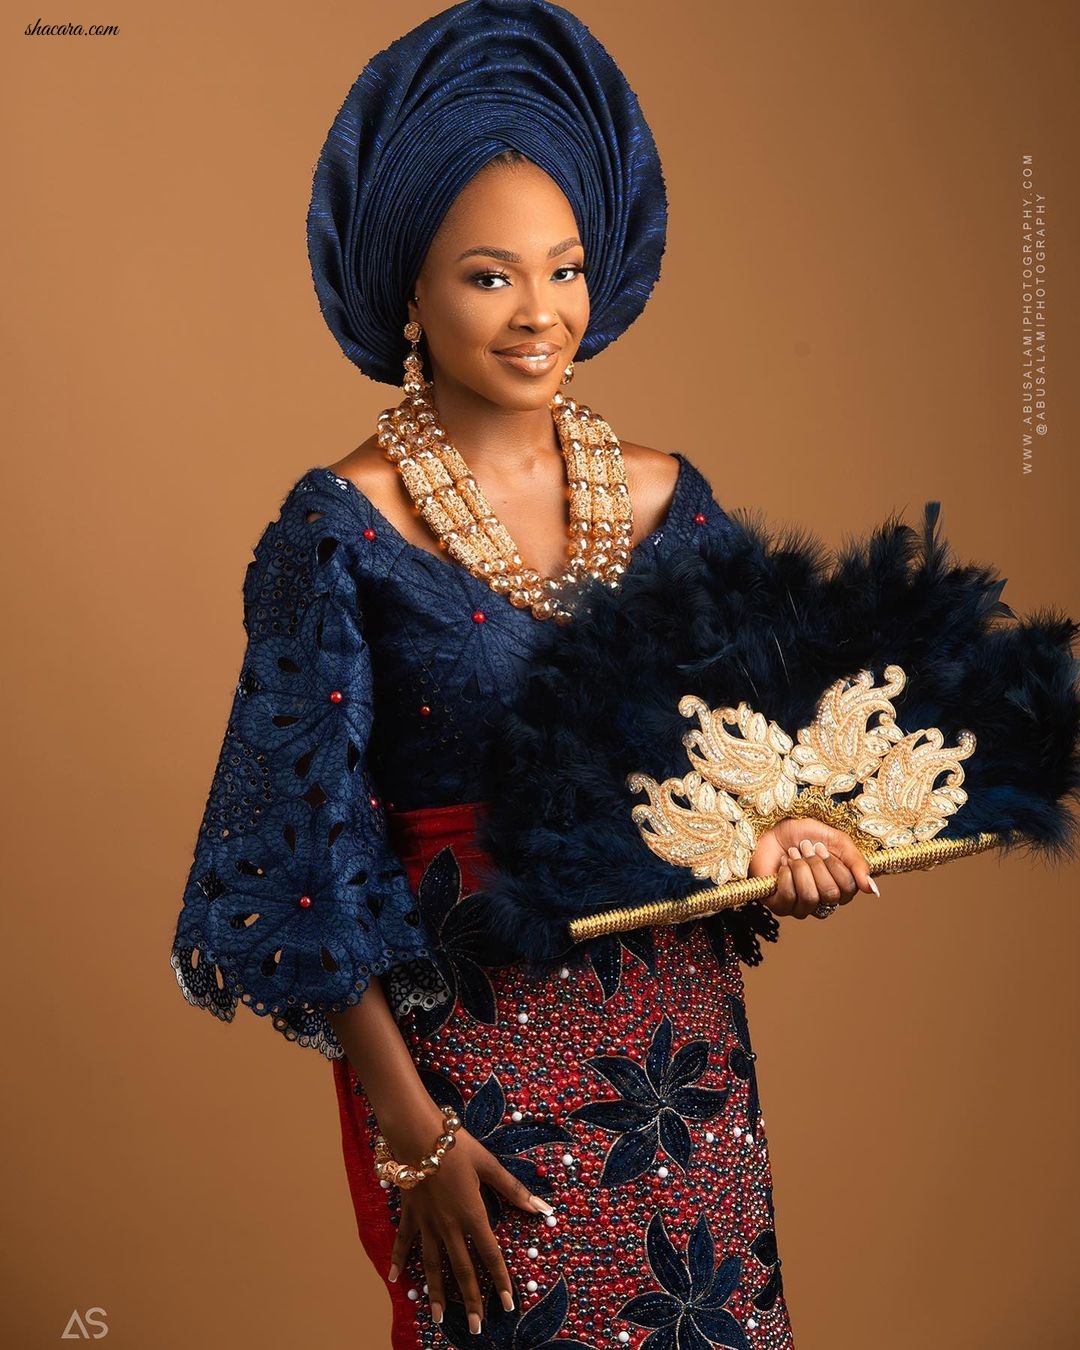 BBNaija’s Vee Serves Yoruba Bridal Beauty Inspo In New Photos